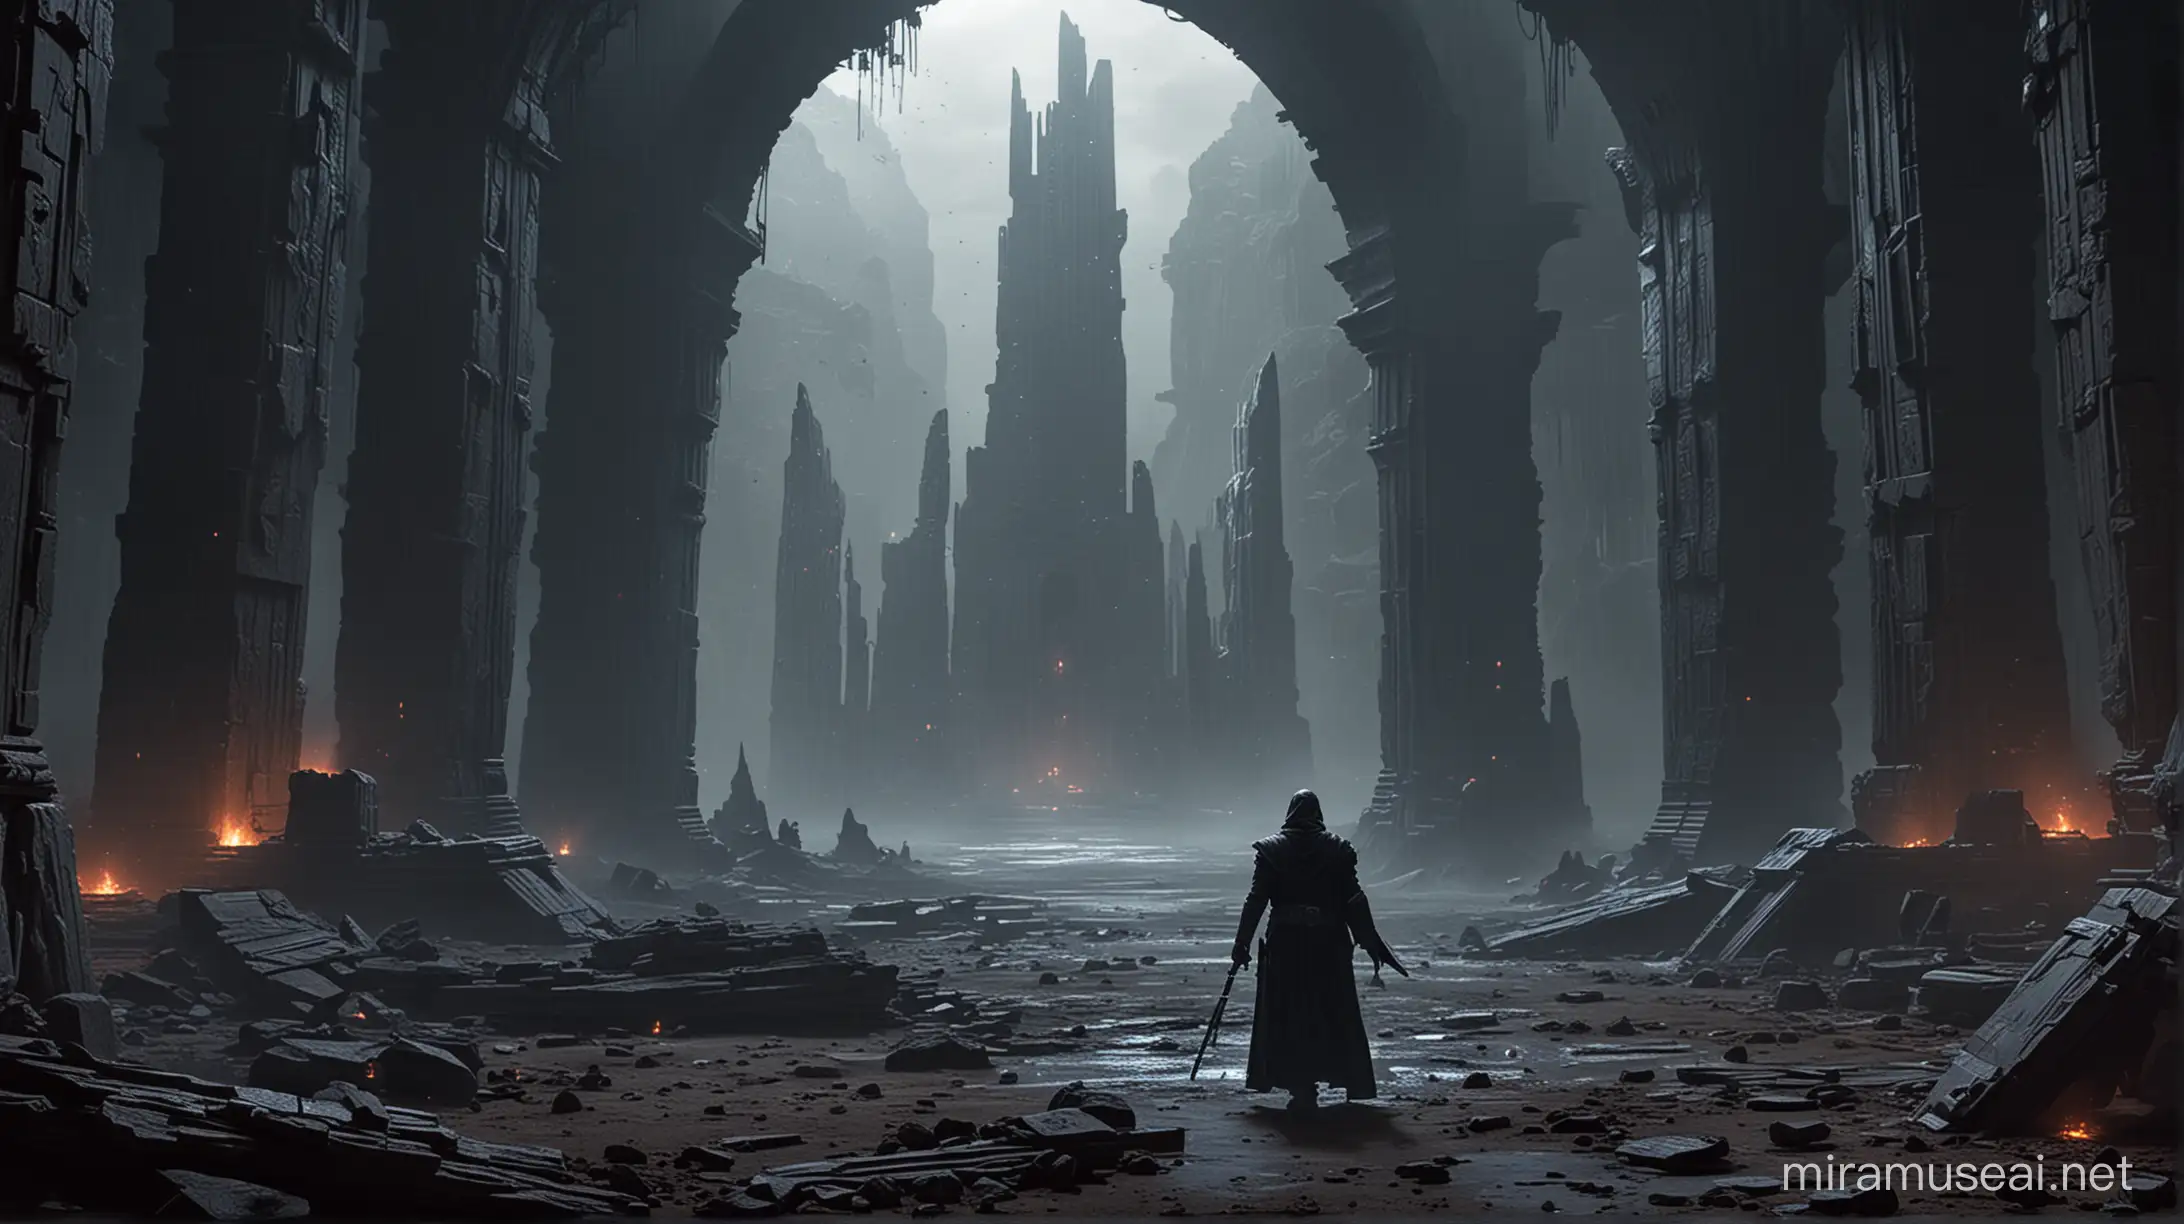 Dark Jedi Exploring Ruined Temple for Lost Knowledge